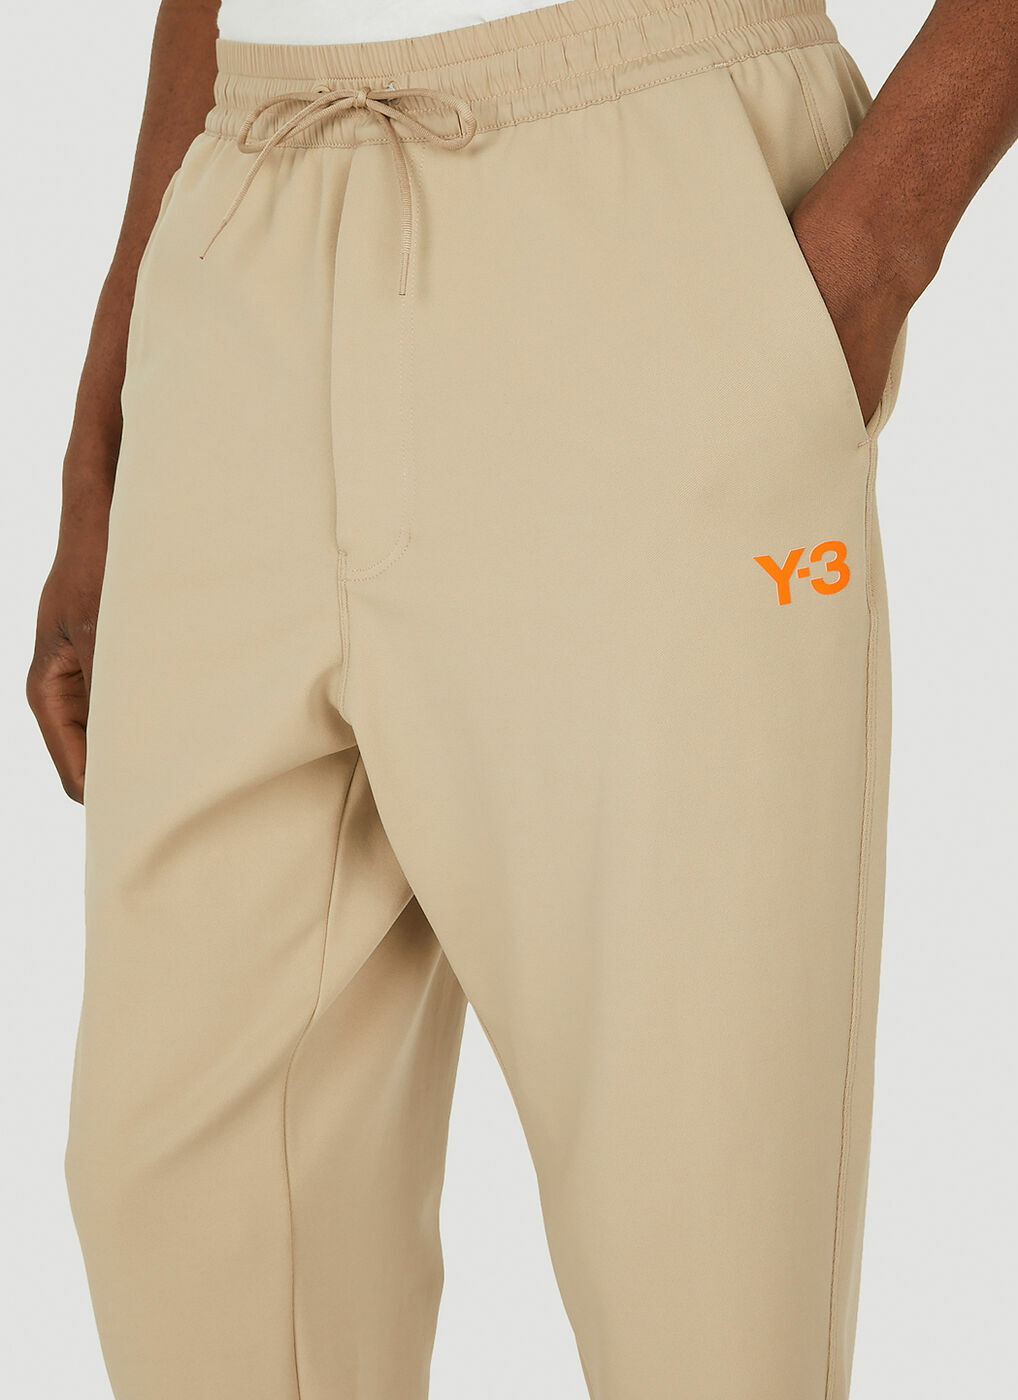 Cuffed Track Pants in Khaki Y-3